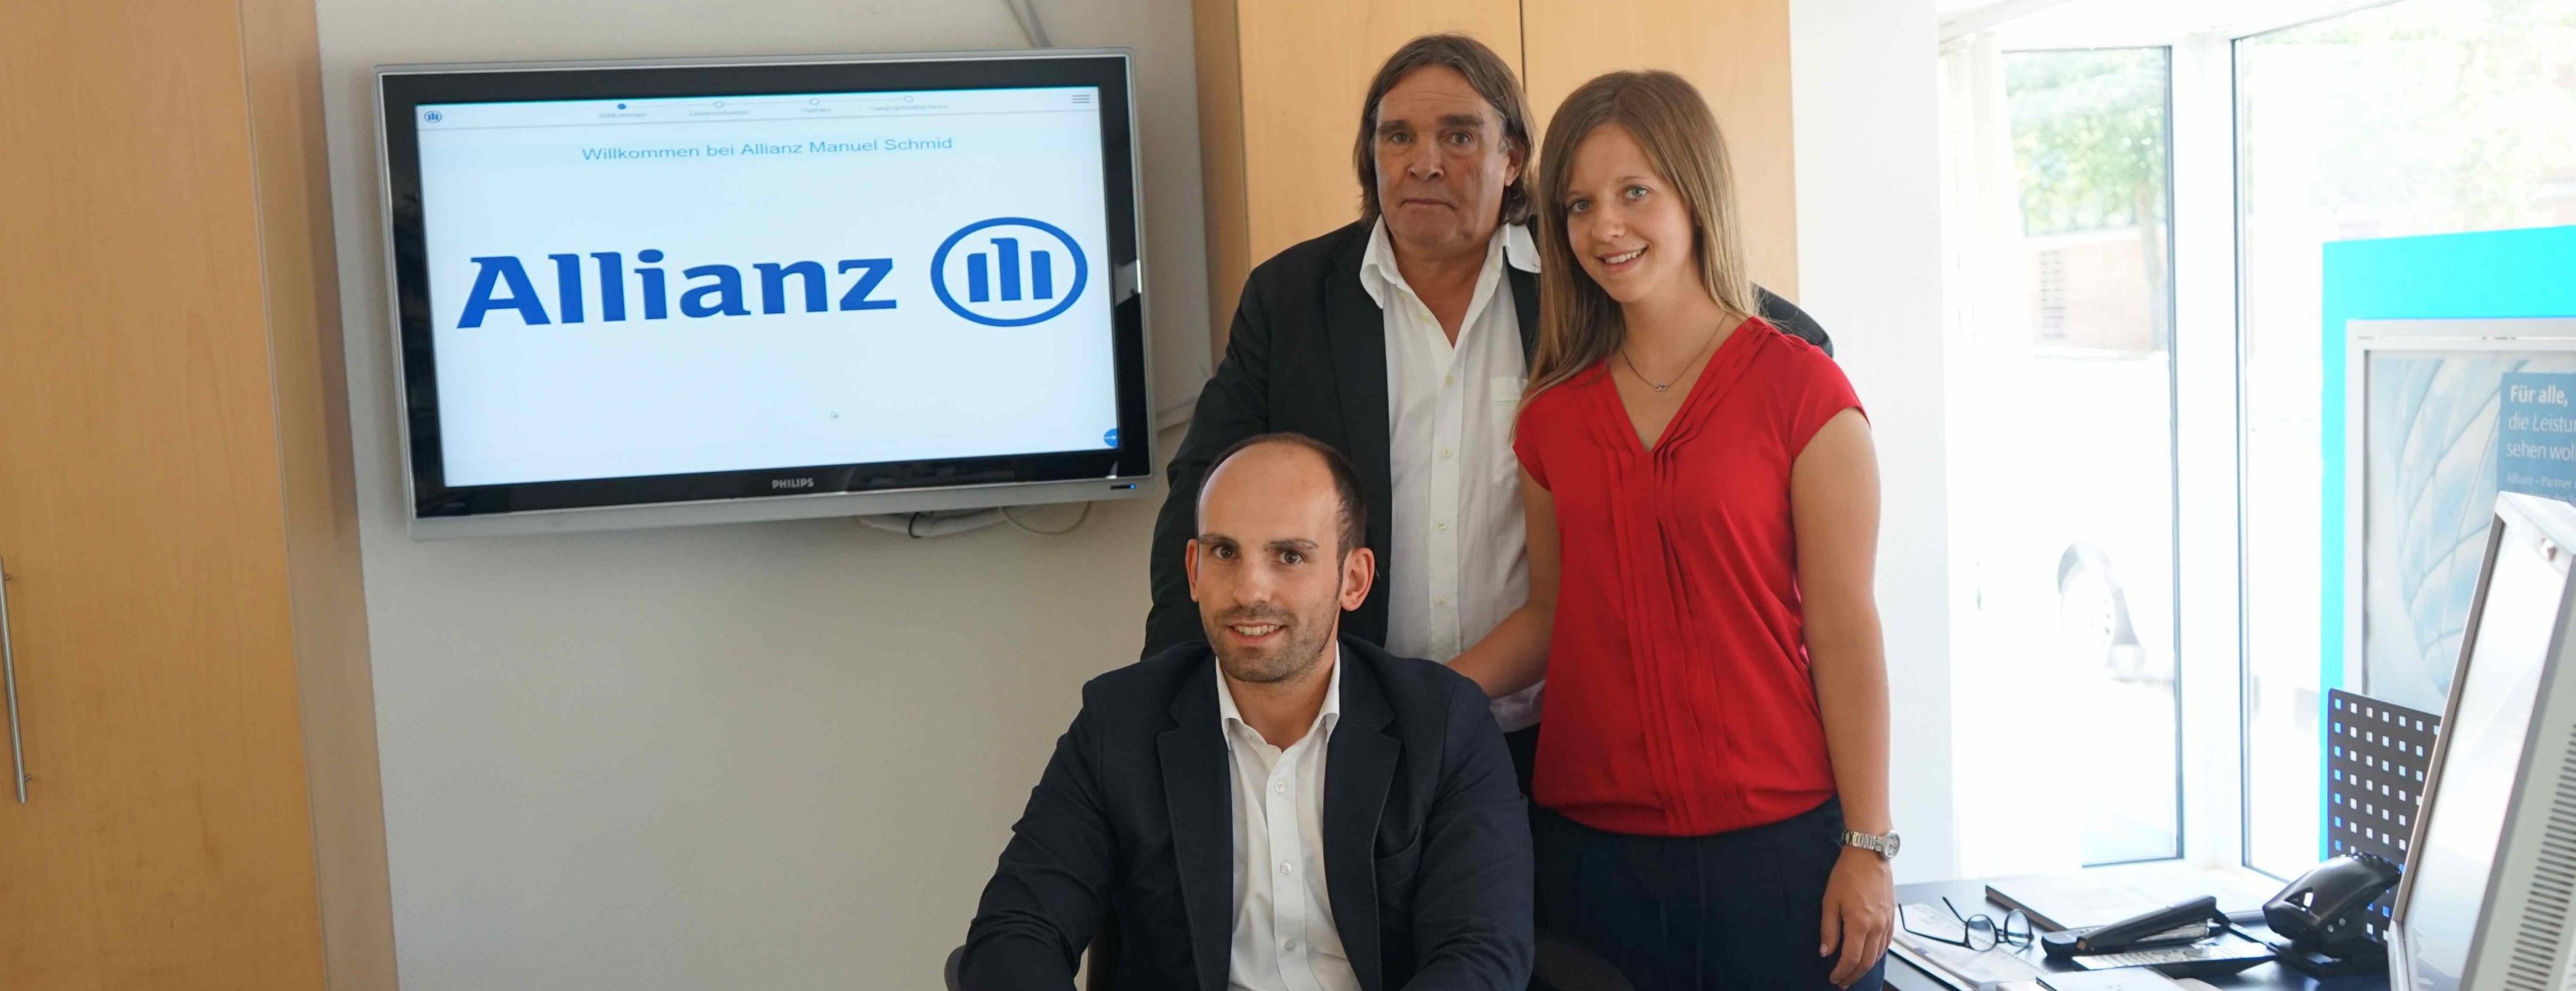 Allianz Versicherung Manuel Schmid Freiburg im Breisgau - Unser Team